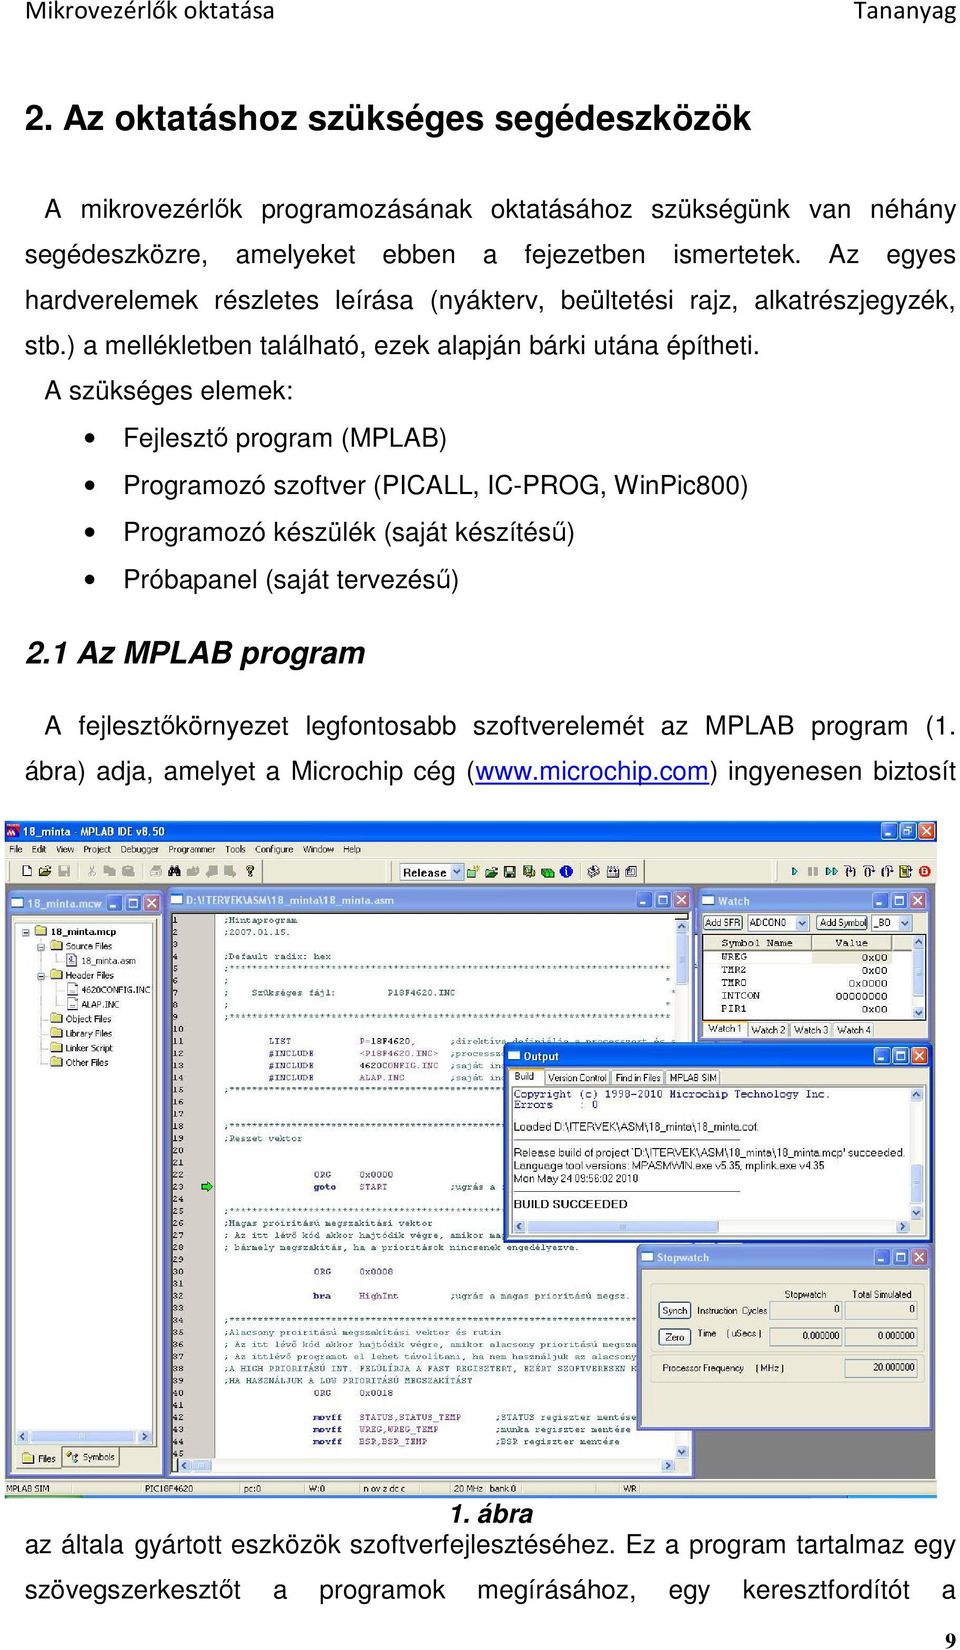 A szükséges elemek: Fejlesztı program (MPLAB) Programozó szoftver (PICALL, IC-PROG, WinPic800) Programozó készülék (saját készítéső) Próbapanel (saját tervezéső) 2.